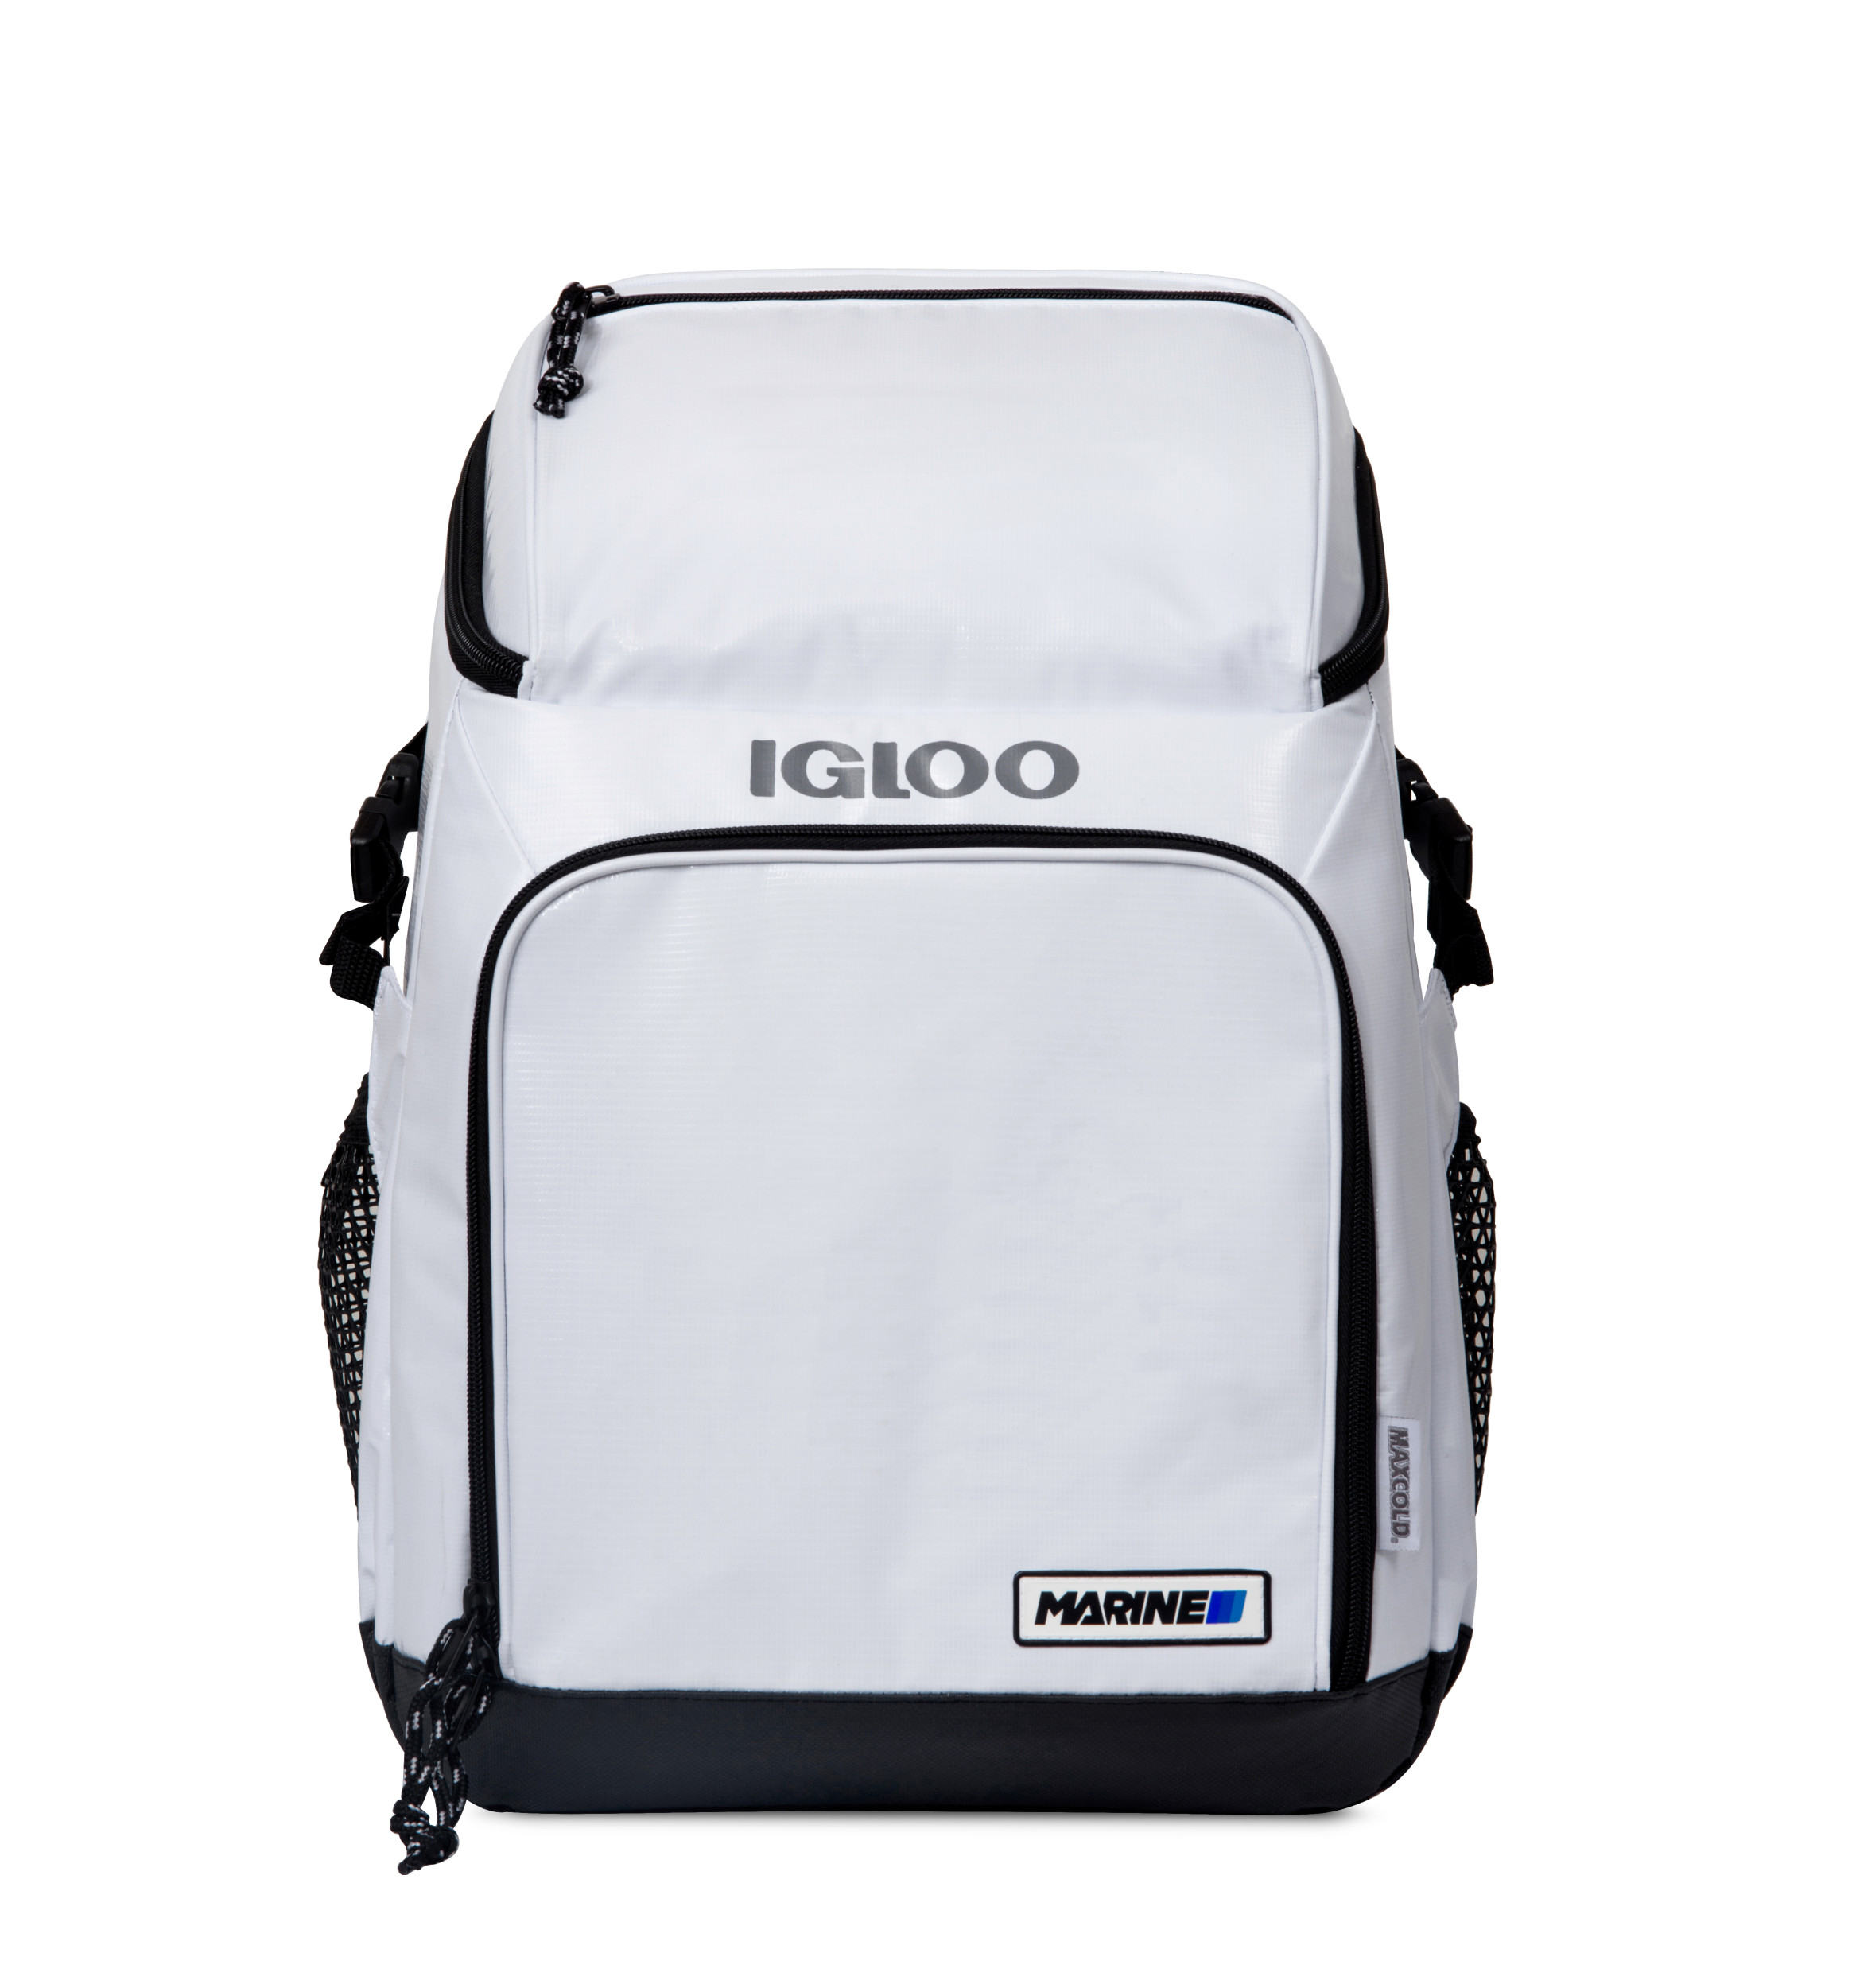 Igloo 9624 - Marine Backpack Cooler